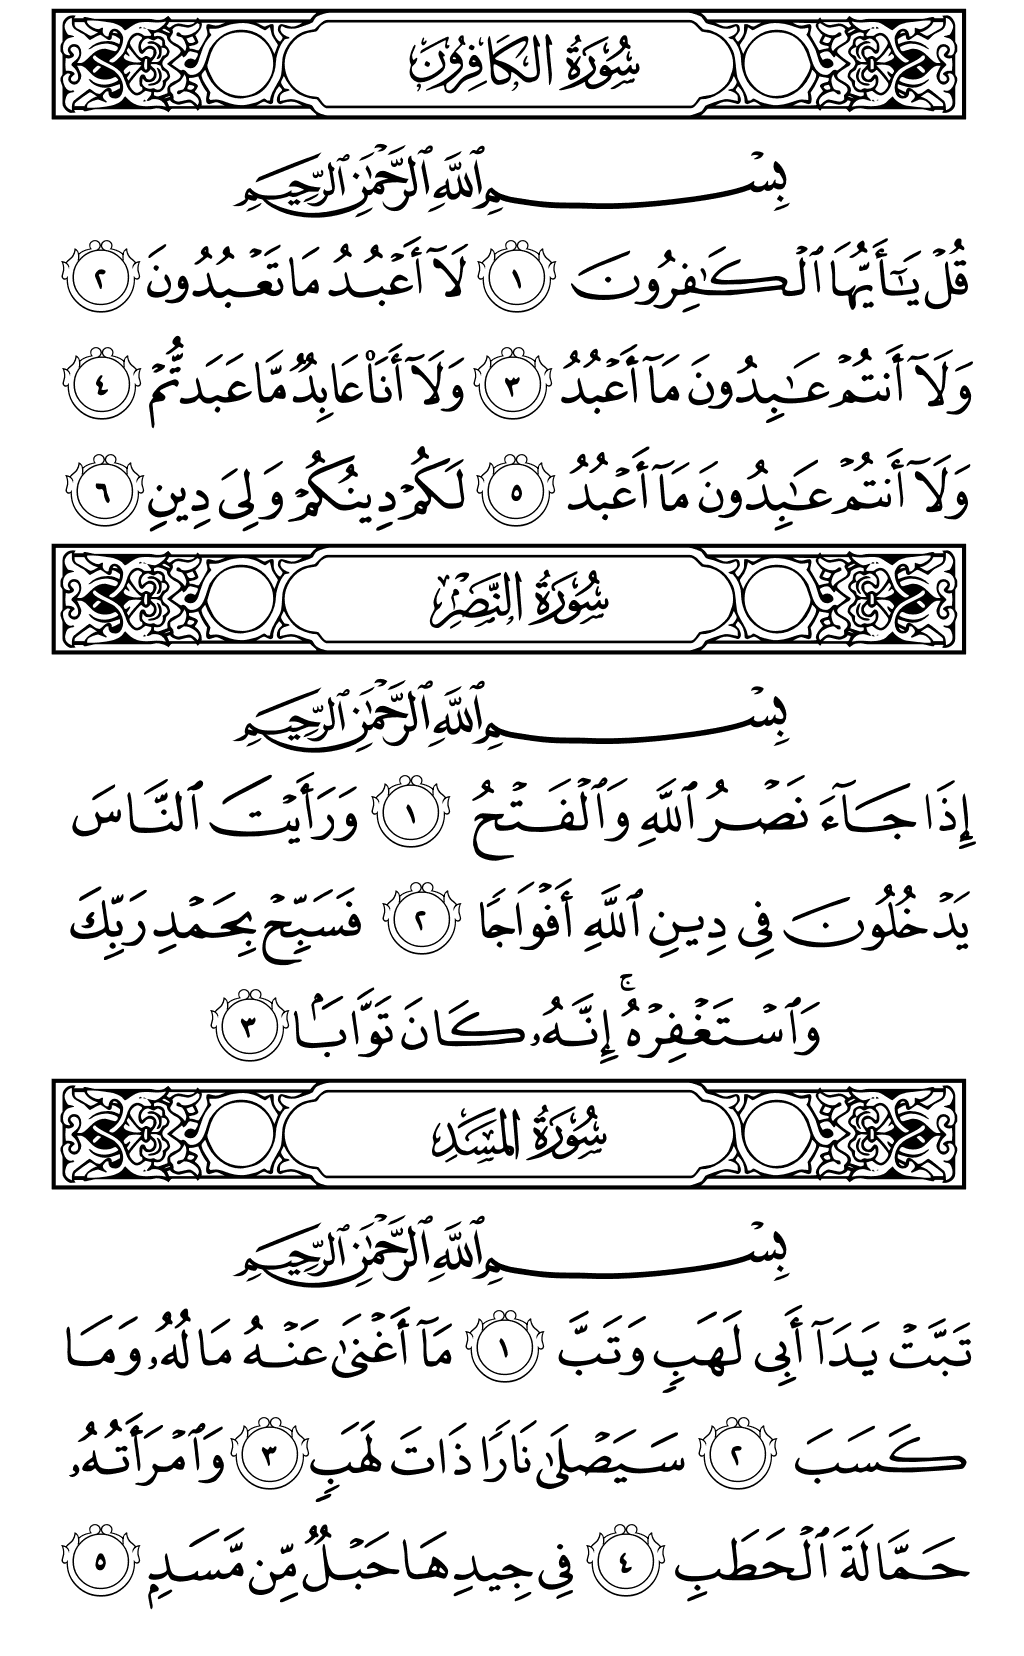 الصفحة رقم 603 من القرآن الكريم